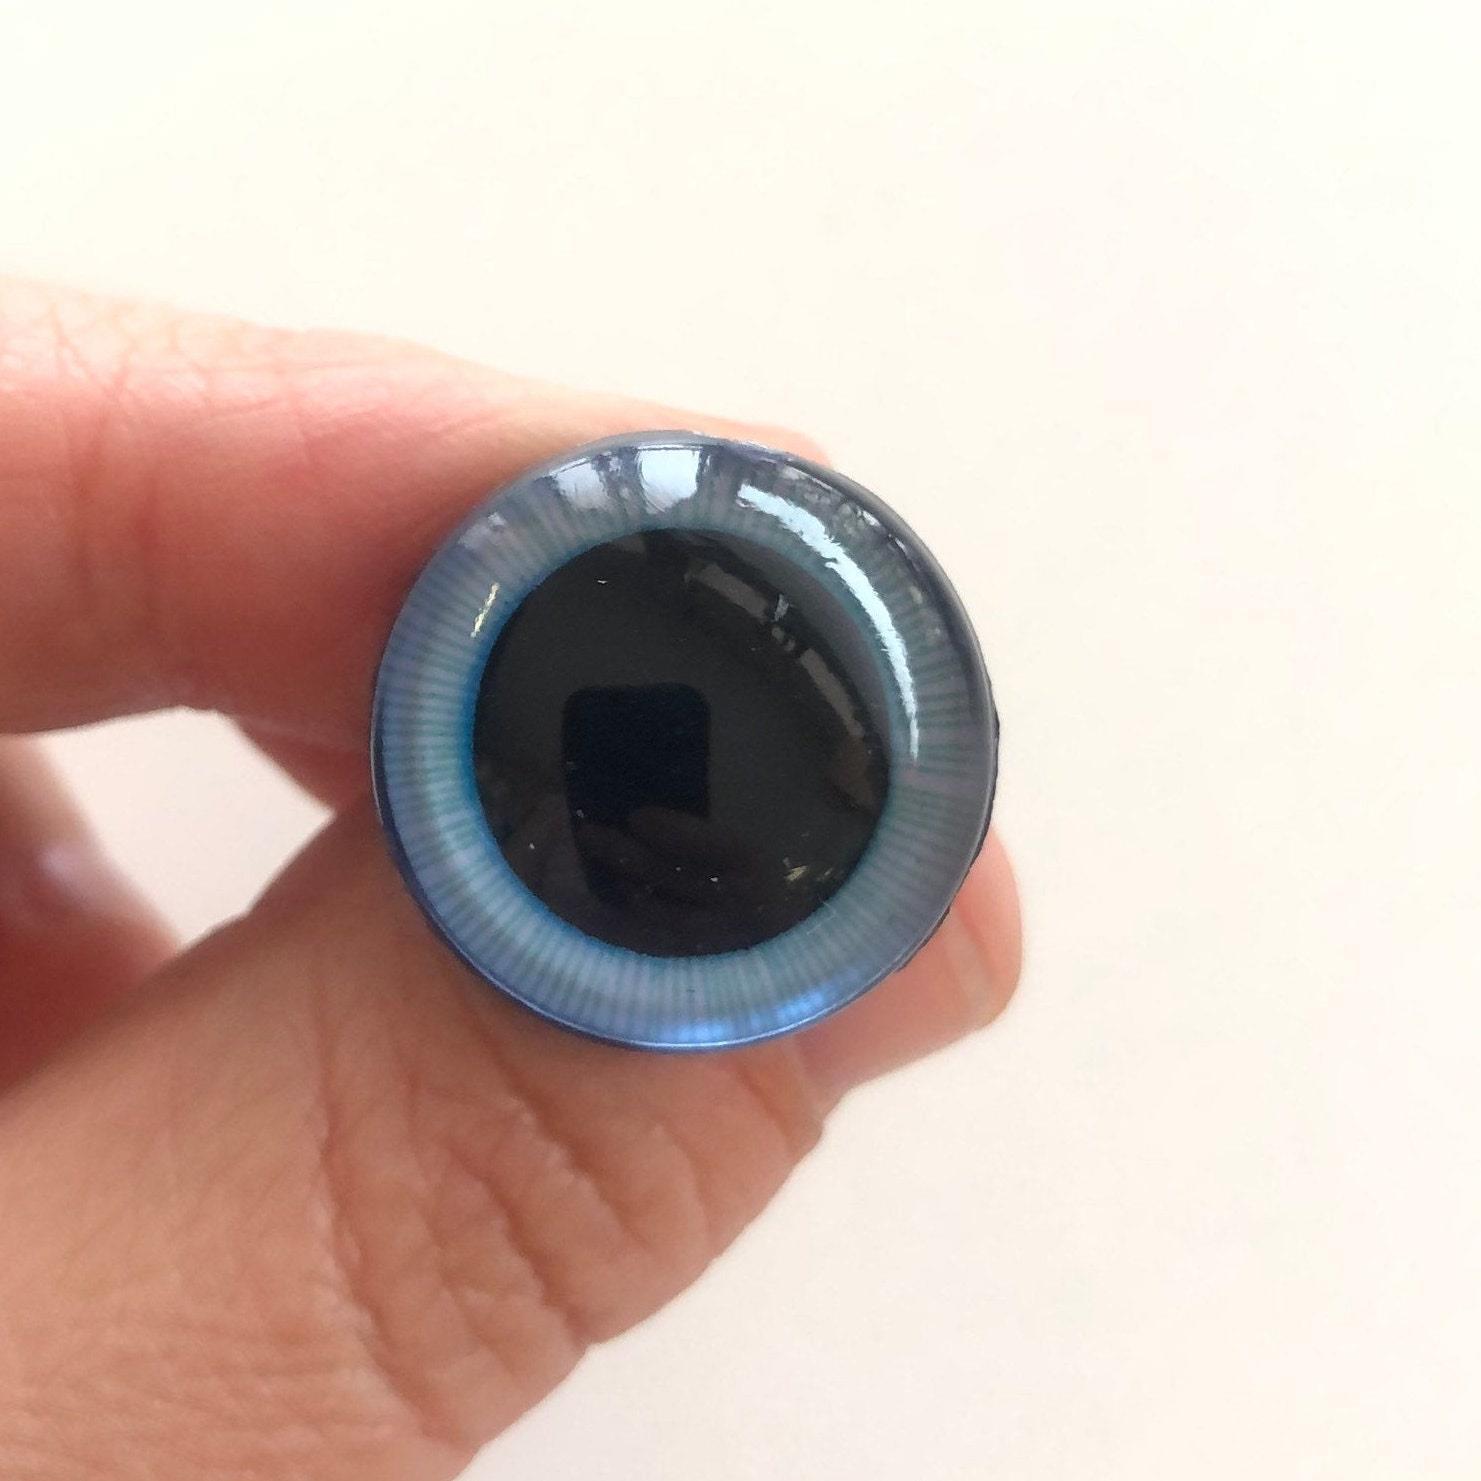 Sicherheitsaugen 20 mm blau, große Pupille, 1 Paar